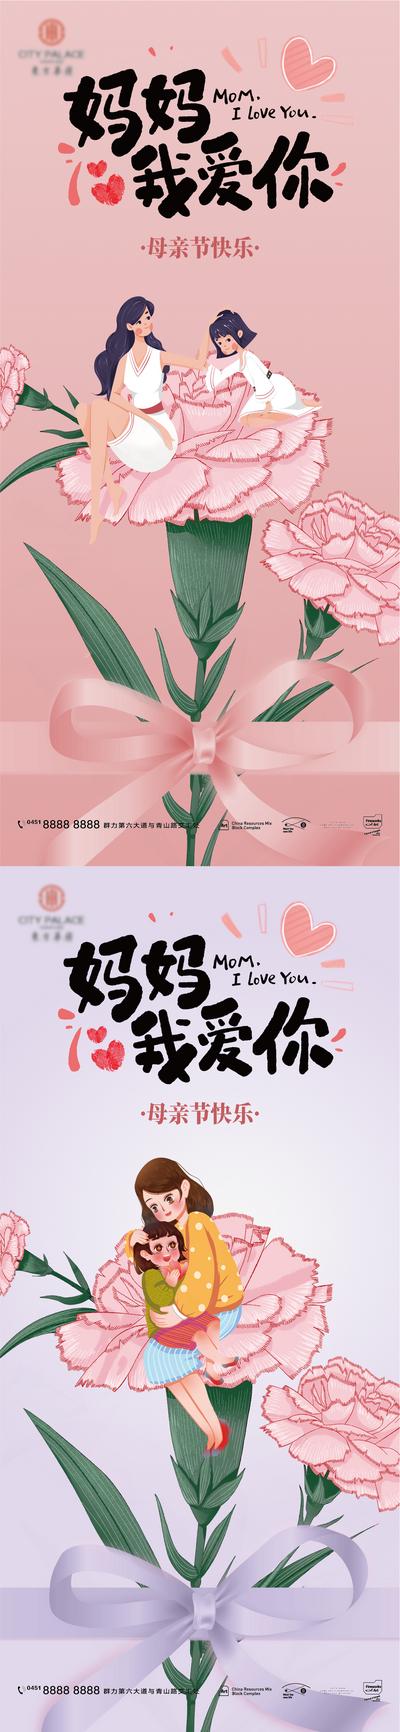 南门网 海报 地产 公历节日 母亲节 康乃馨  插画 祝福  